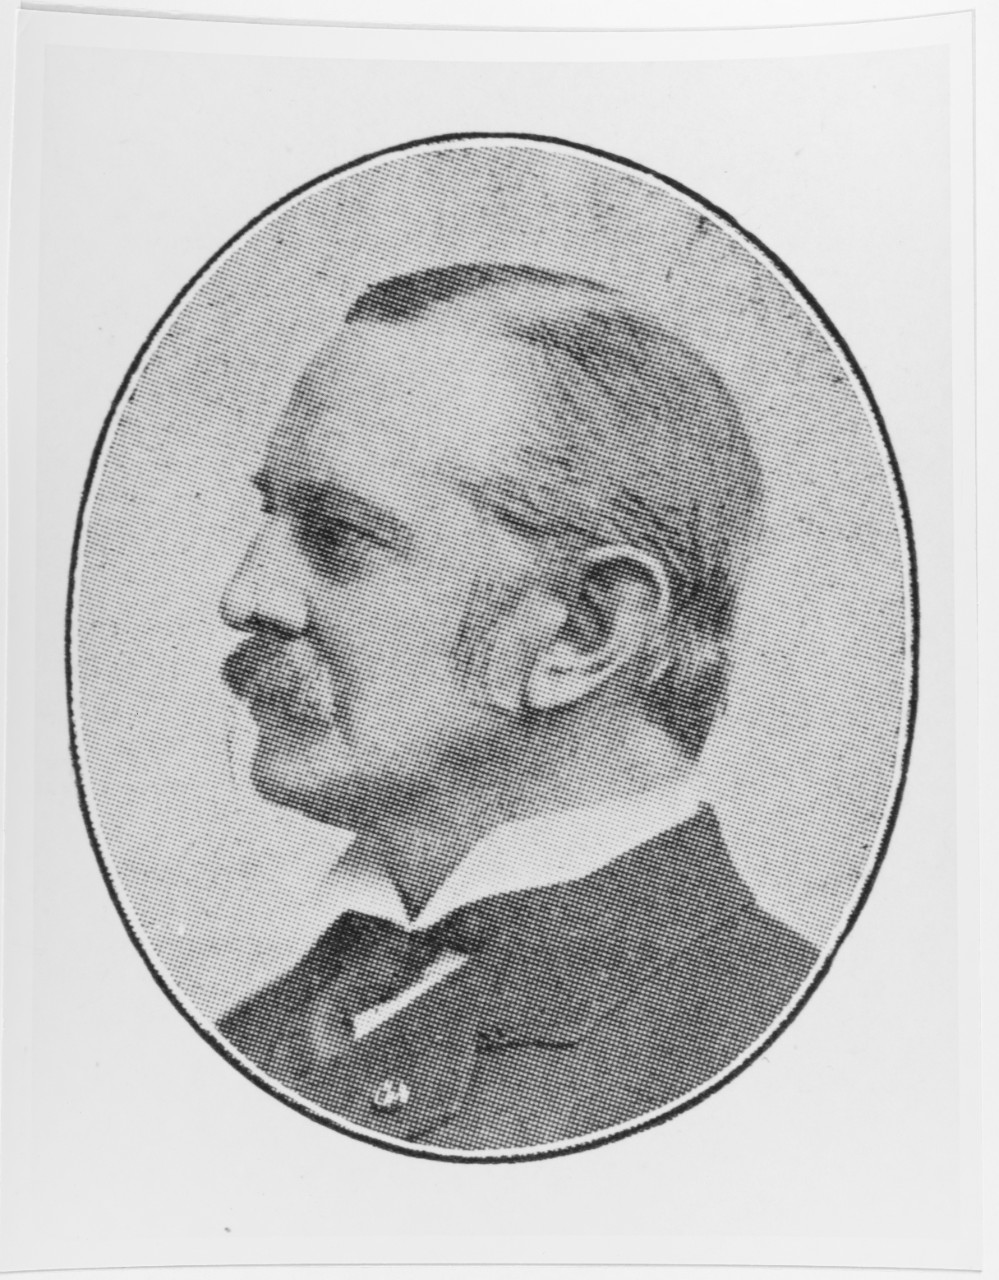 George A. Lyon